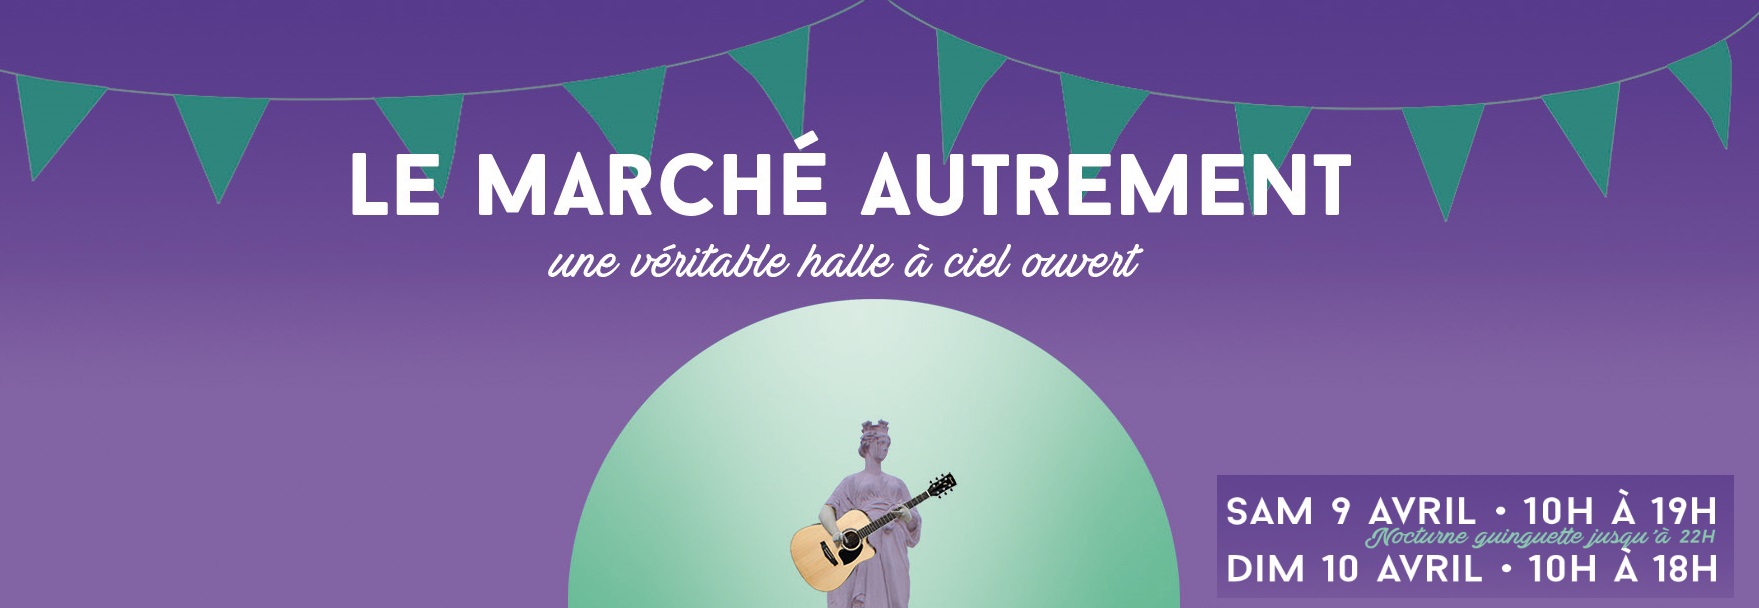 14ième édition du Marché Autrement les 9 et 10 avril 2022 place Maréchal Lyautey